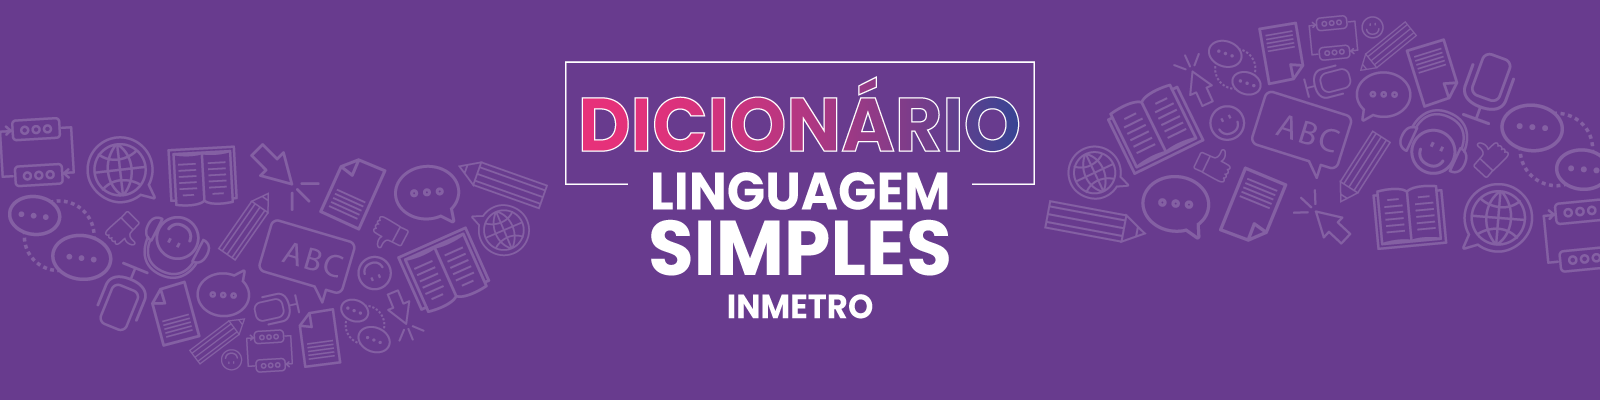 Dicionário Linguagem Simples do Inmetro